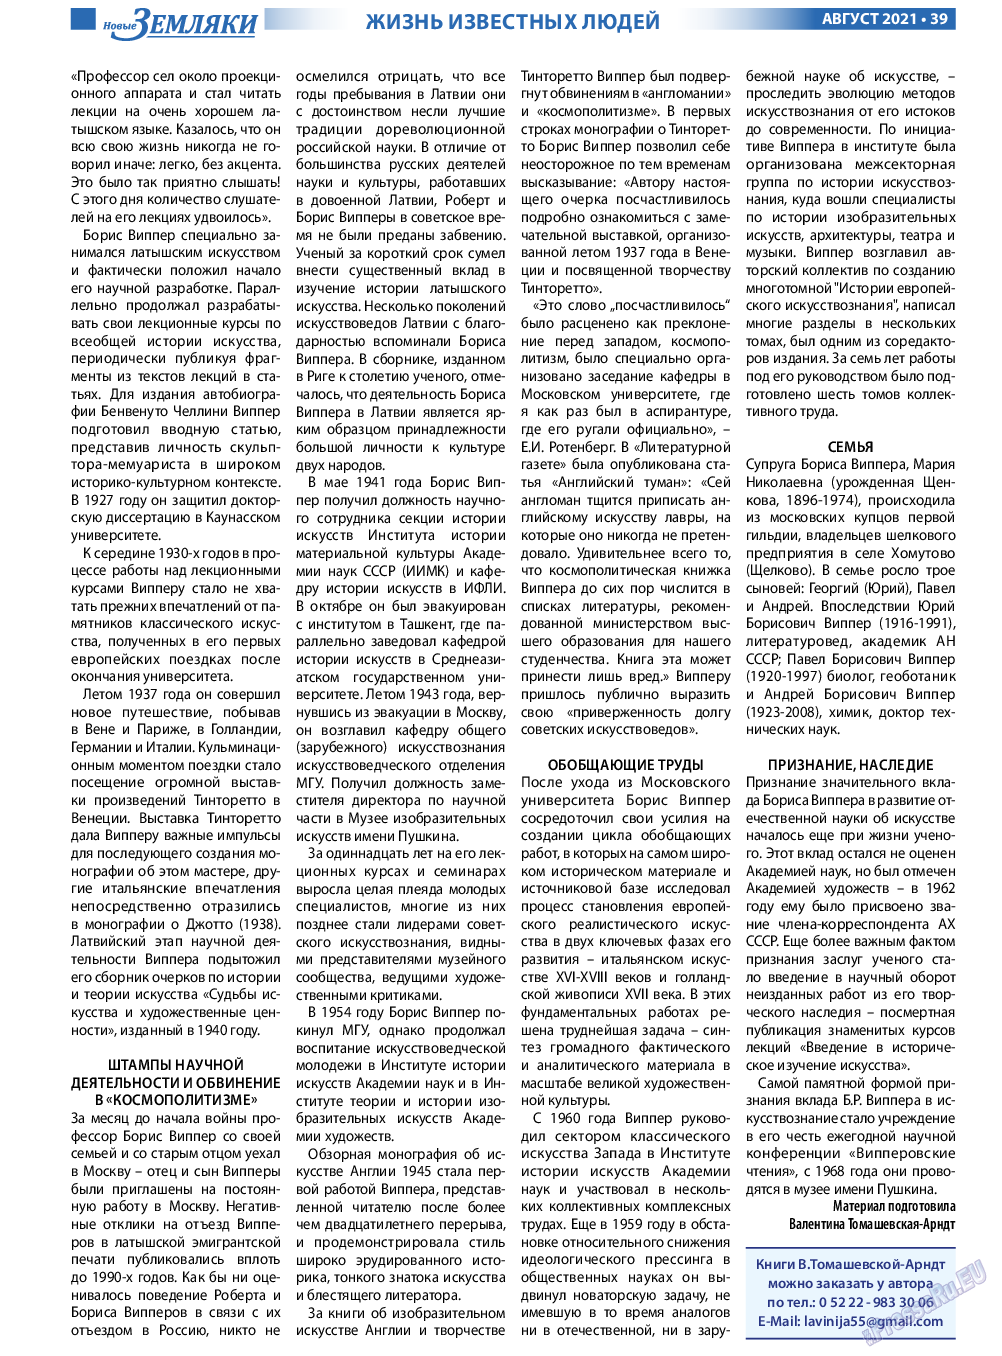 Новые Земляки, газета. 2021 №8 стр.39